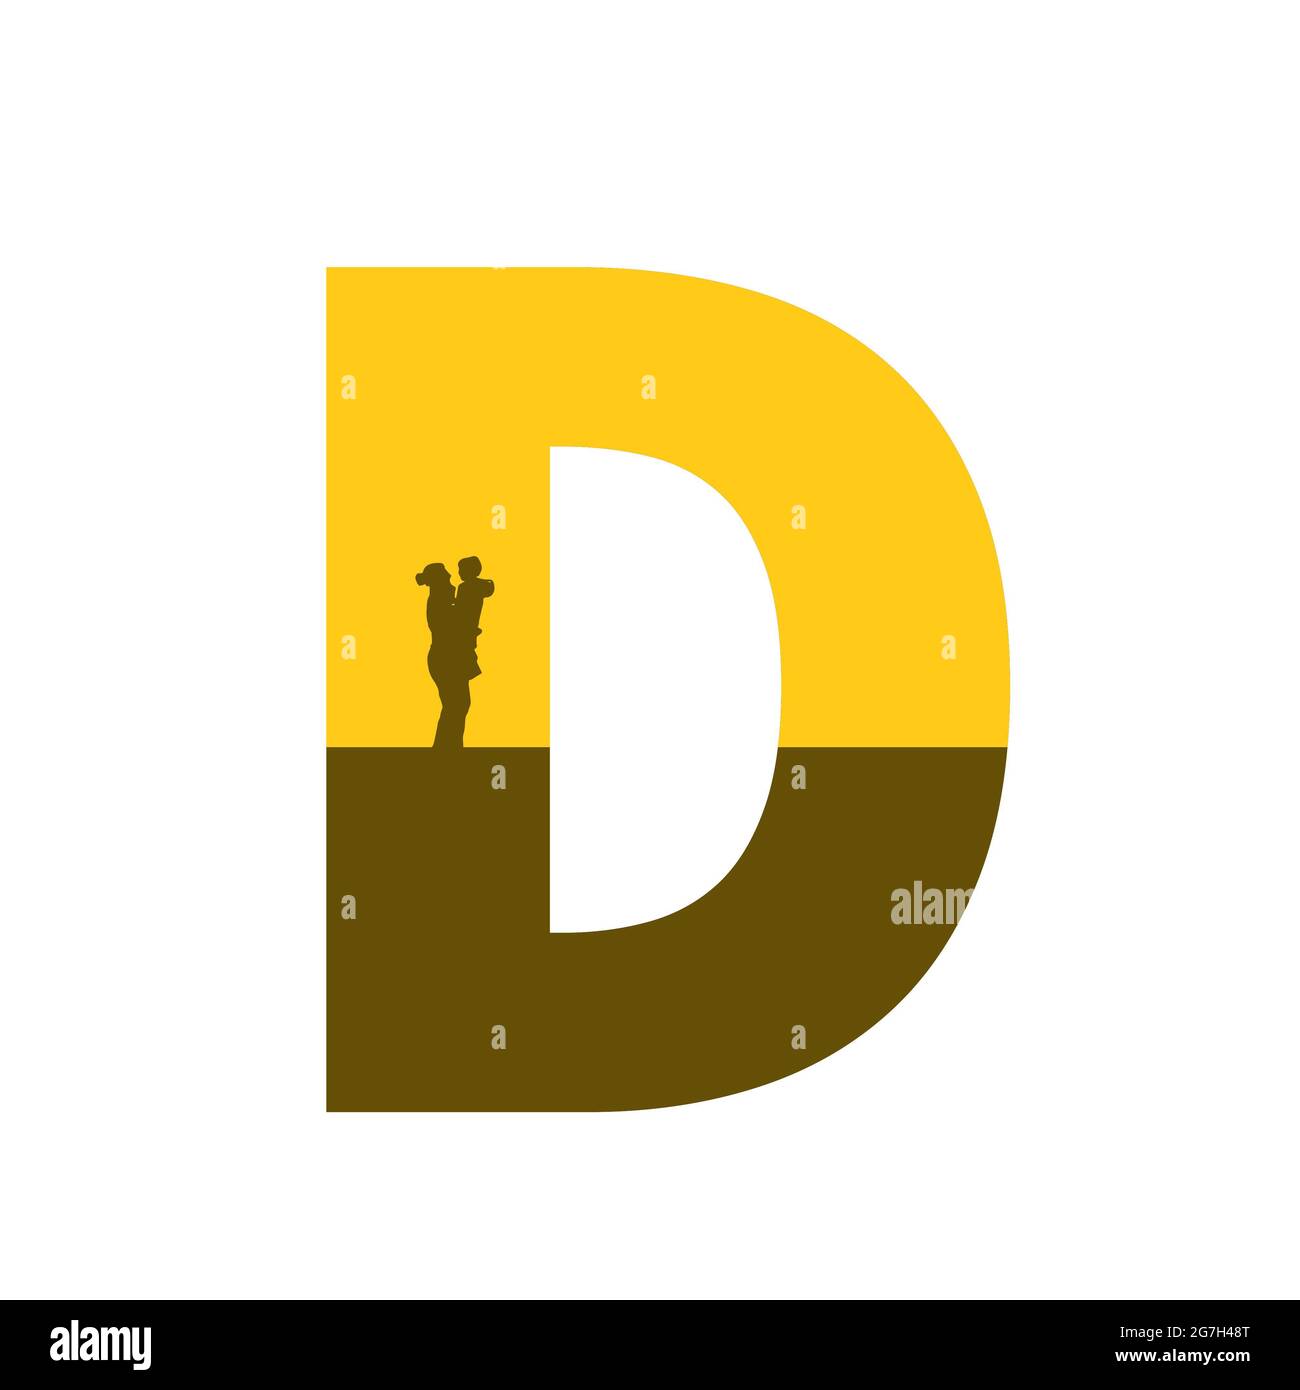 Lettre D de l'alphabet avec une silhouette de mère avec enfant sur le bras, de couleur ocre et marron, isolée sur fond blanc Banque D'Images